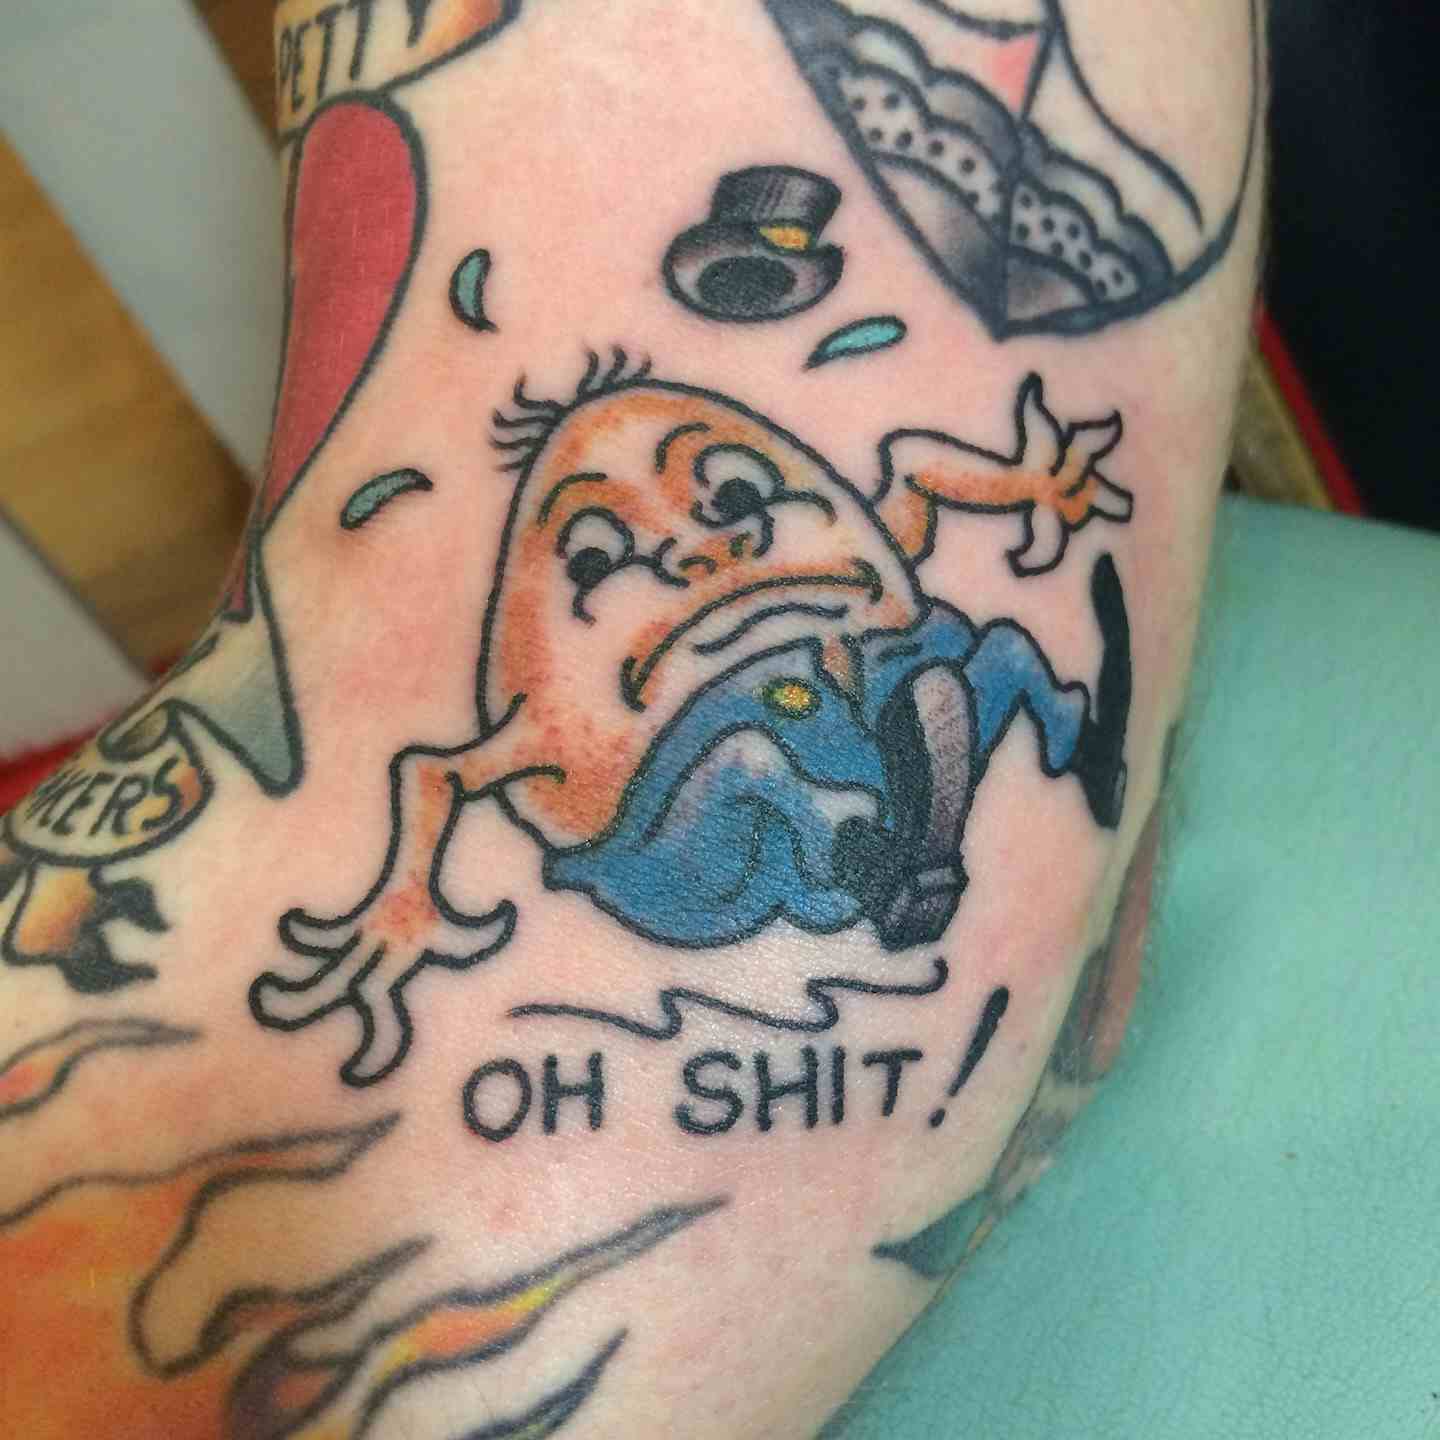 Humpty Dumpty tattoo